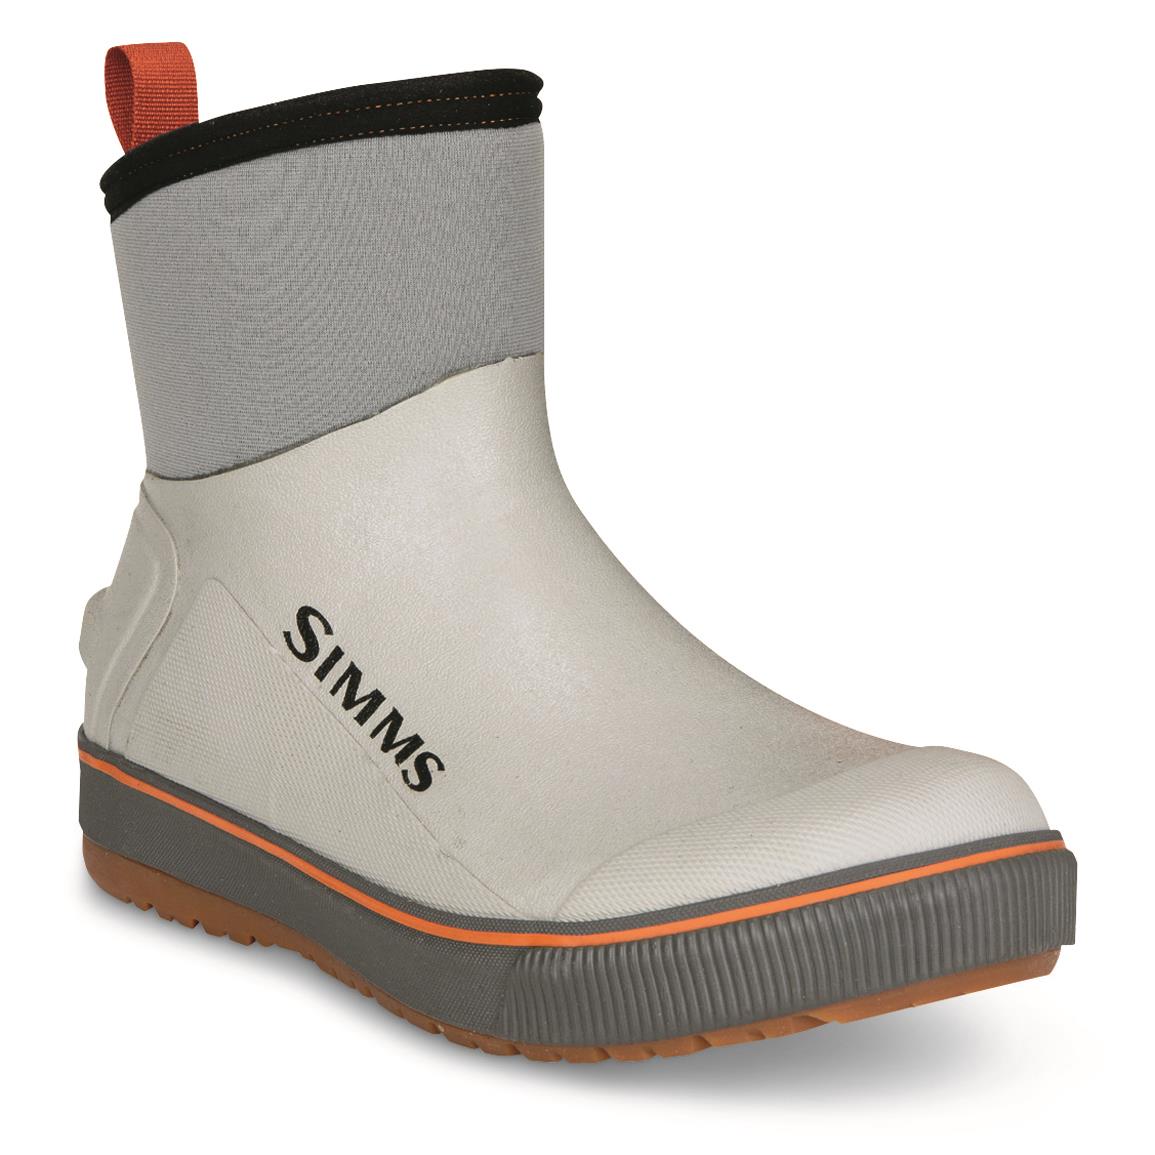 Simms Men's Challenger Waterproof Deck Boots, Cider